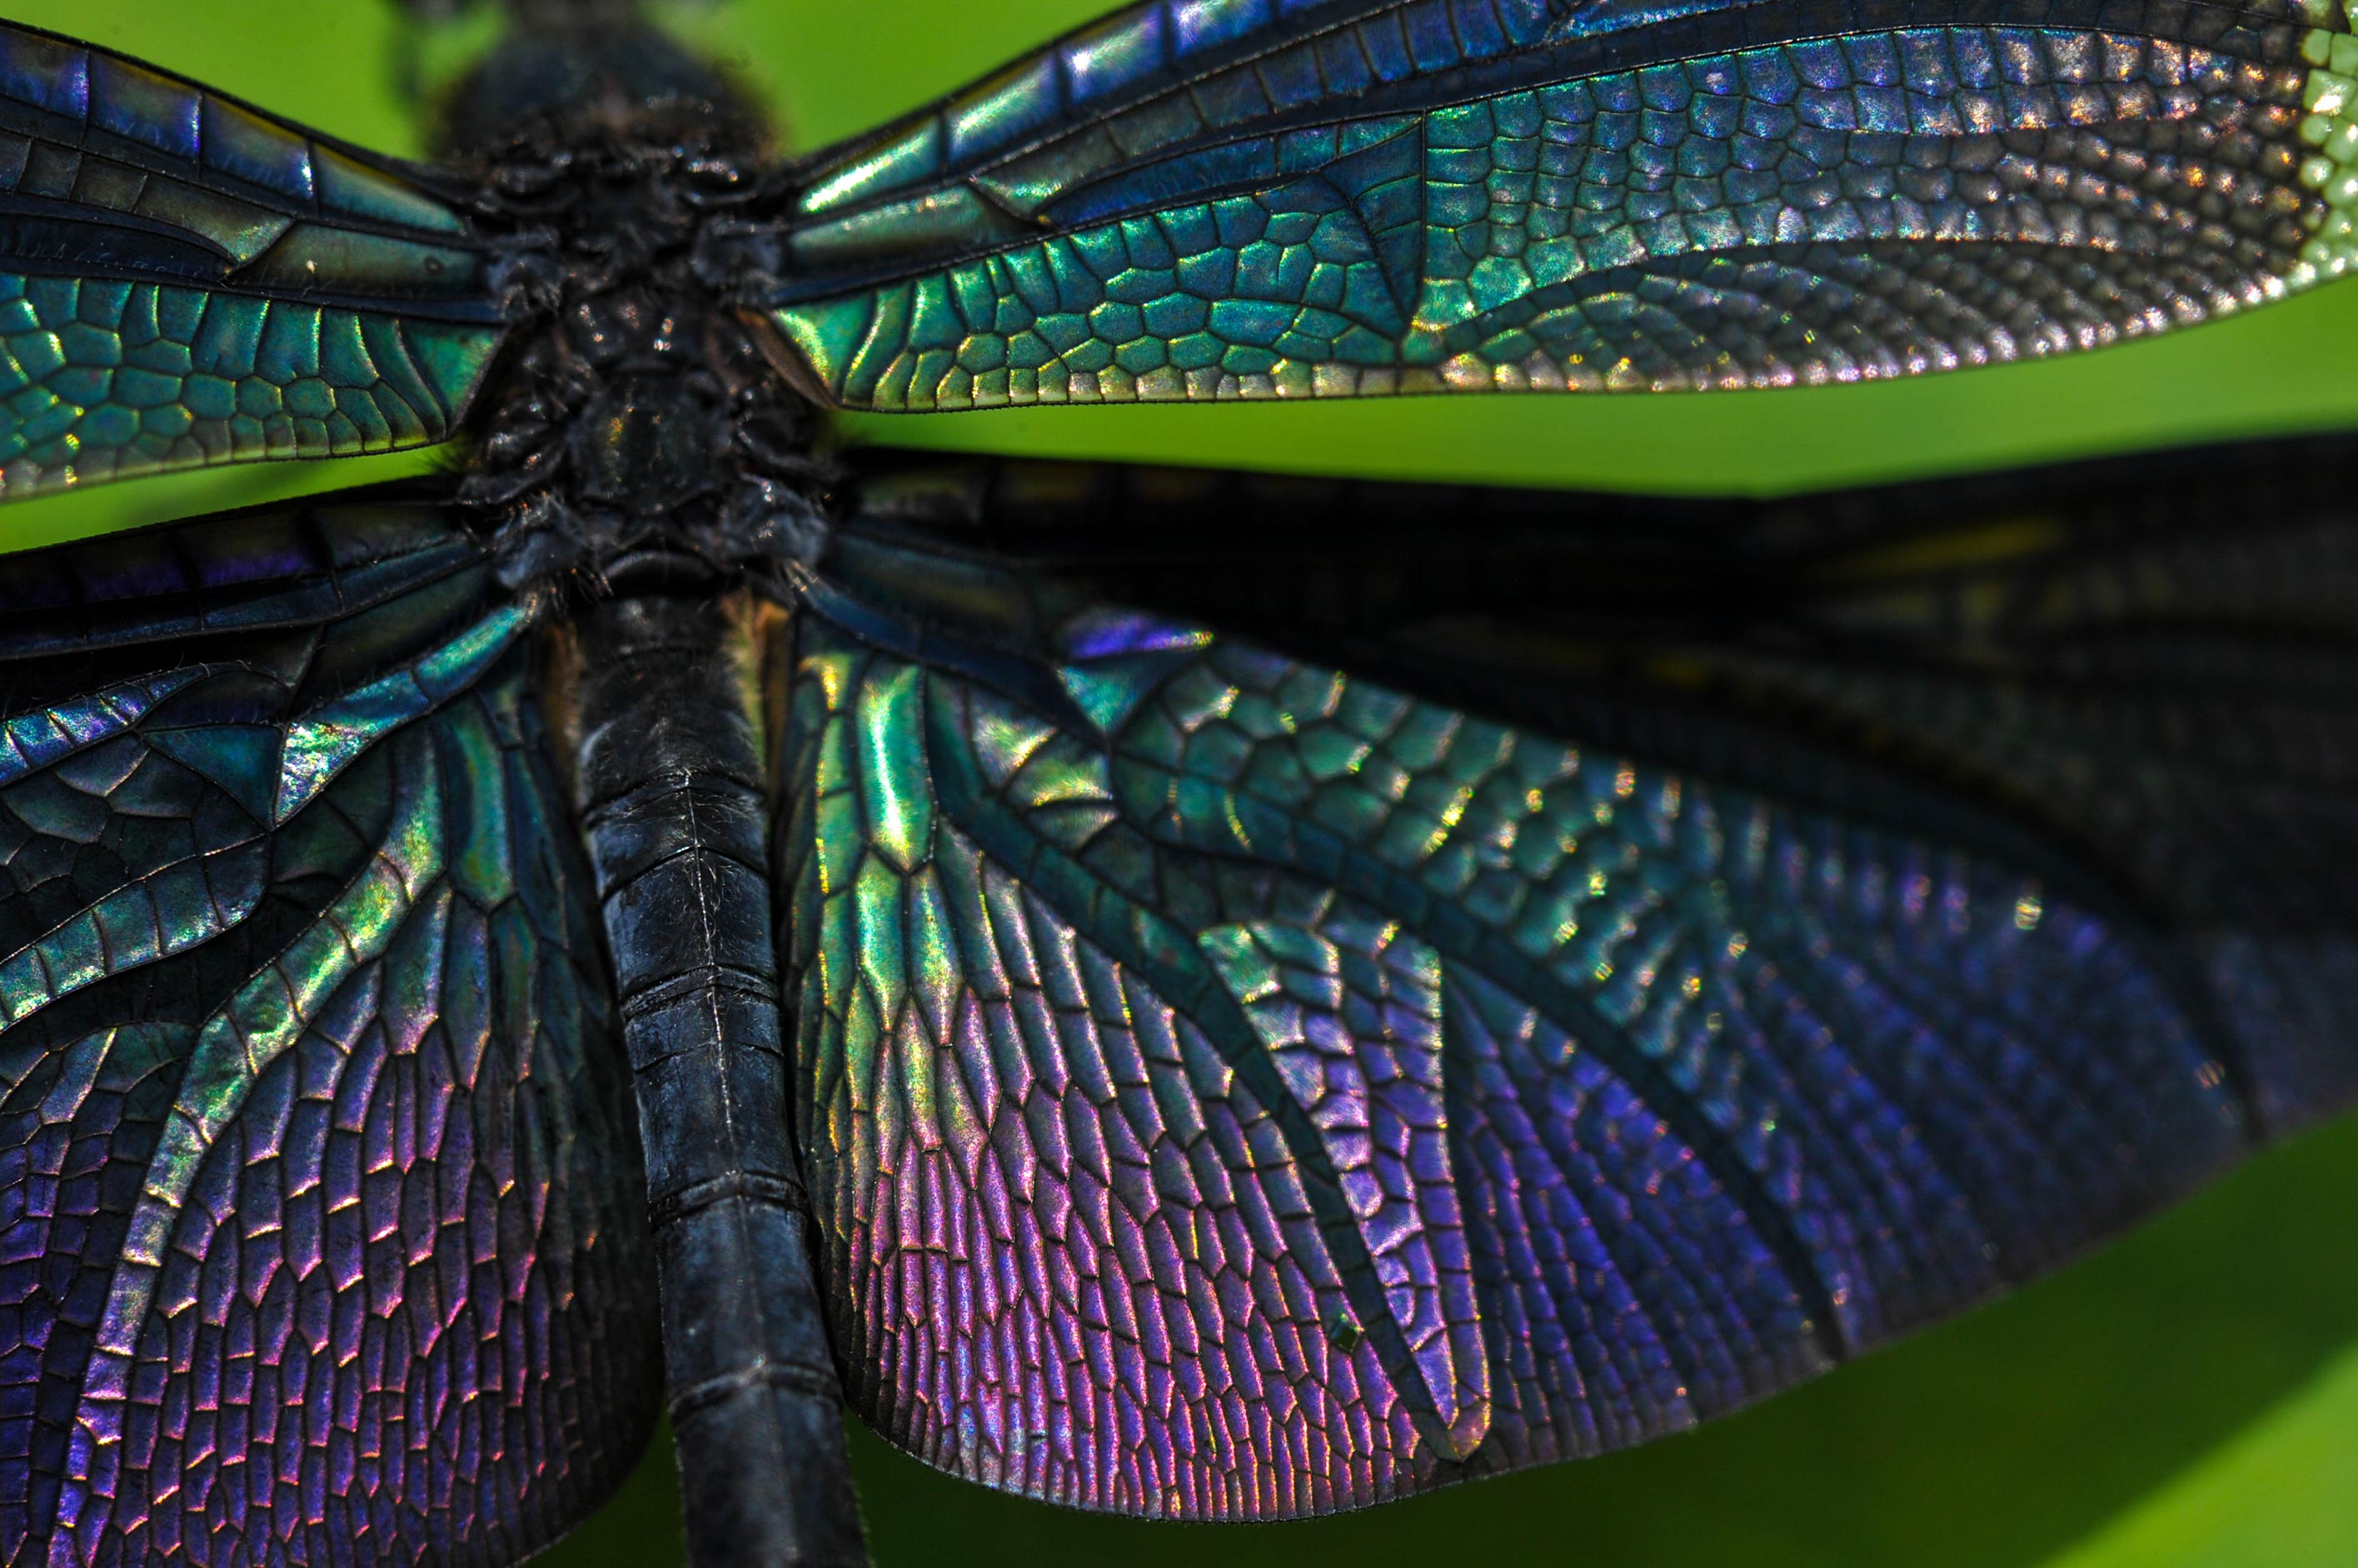 チョウトンボ 輝く羽を持つトンボ 虫の写真と生態なら昆虫写真図鑑 ムシミル